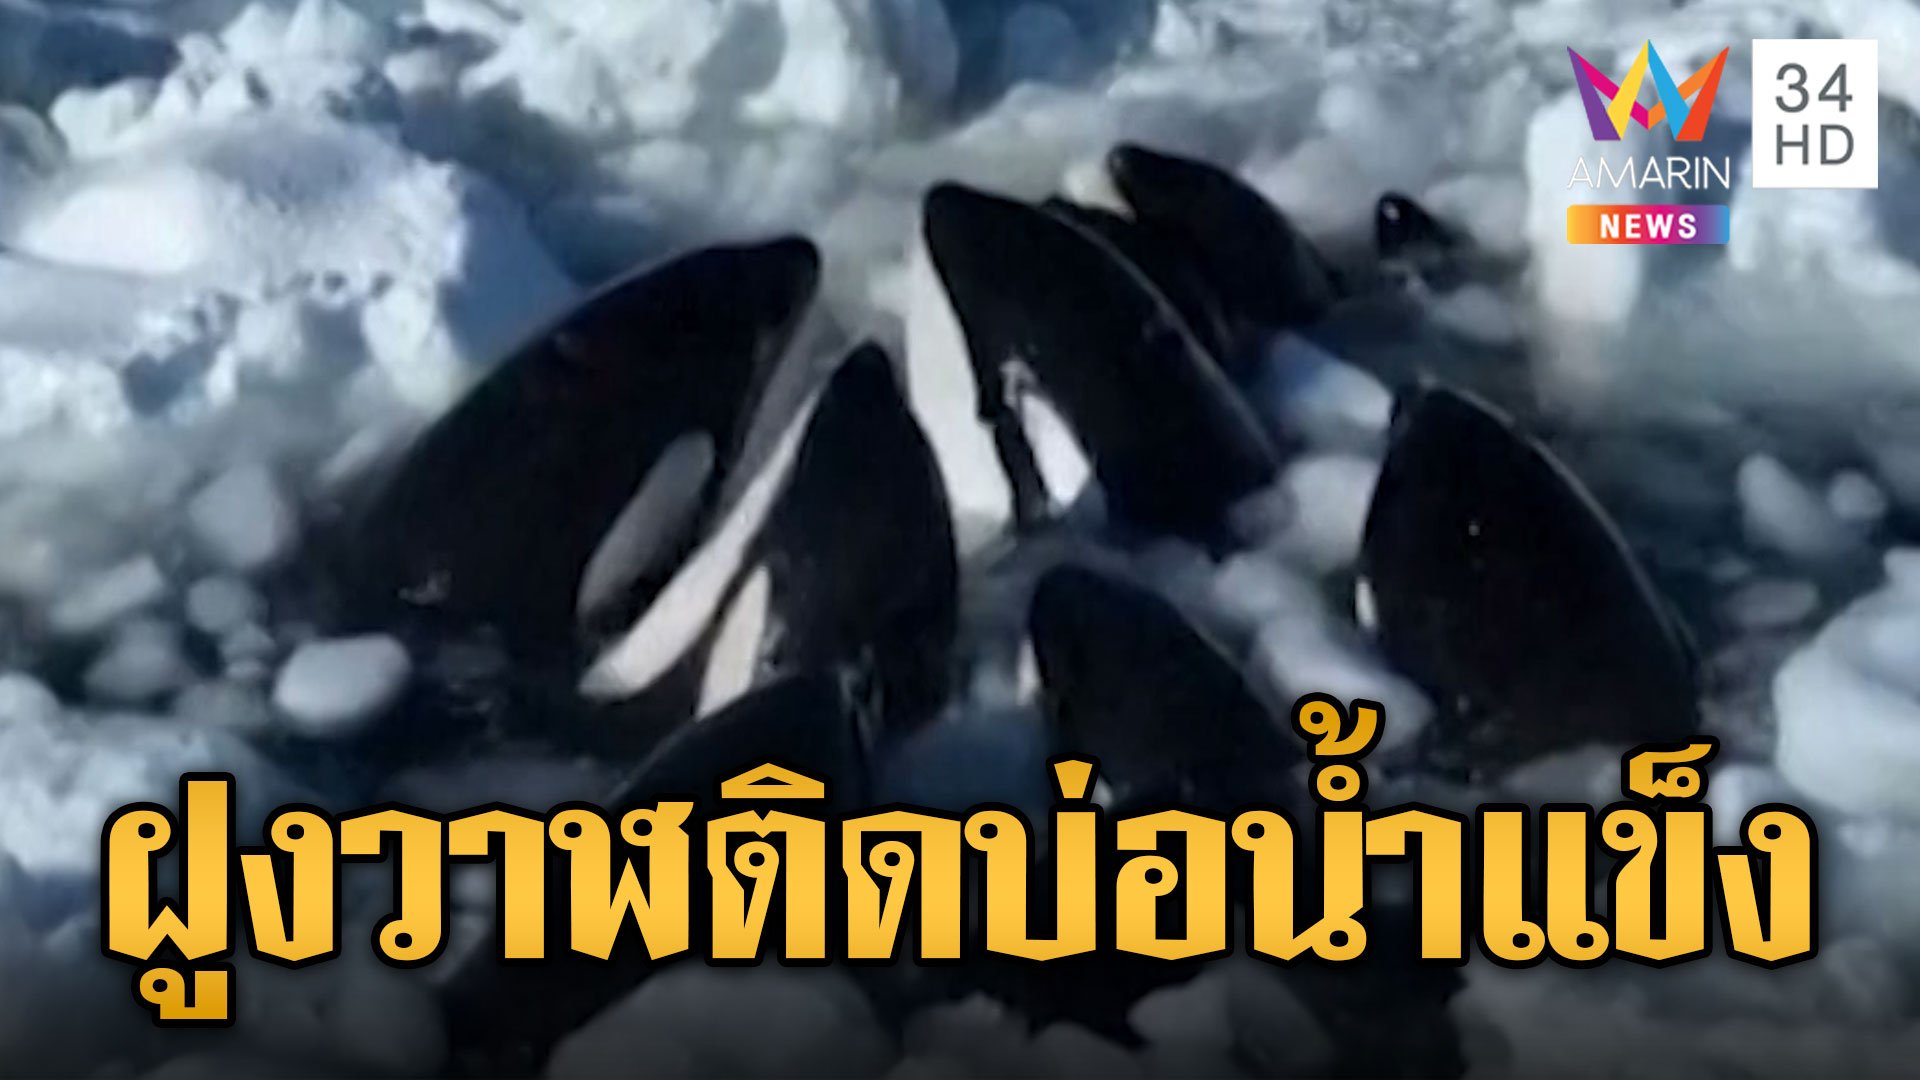 วาฬเพชฌฆาต ติดธารน้ำแข็ง หวั่นขาดใจตายทั้งฝูง | ข่าวอรุณอมรินทร์ | 7 ก.พ. 67 | AMARIN TVHD34